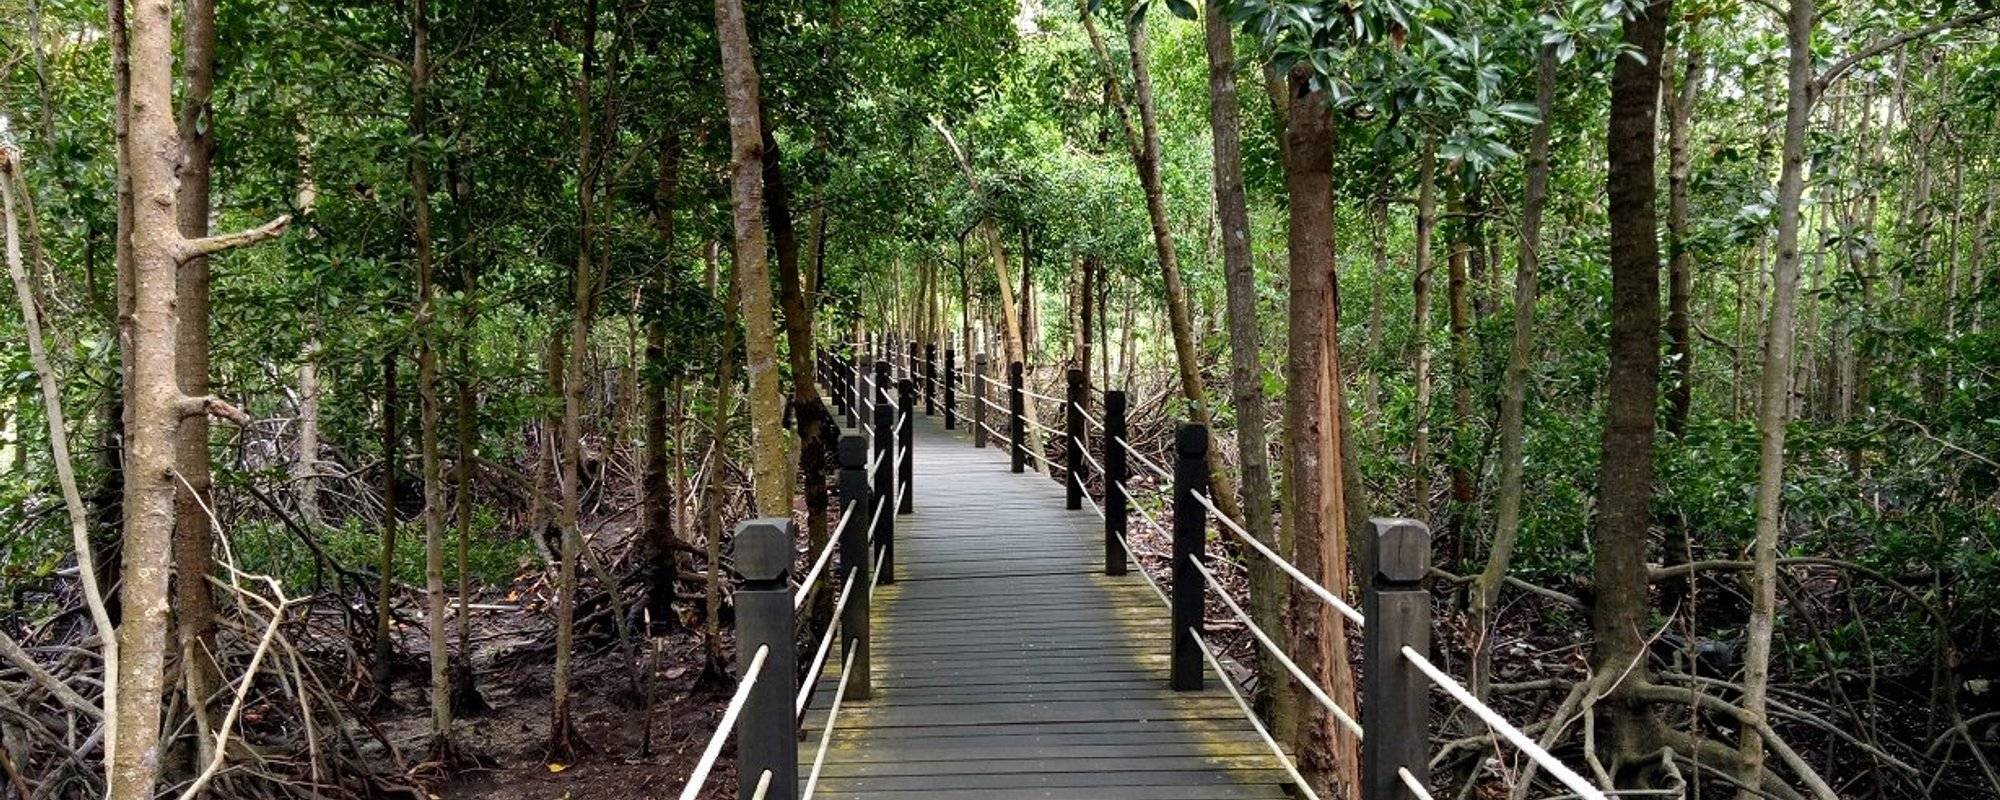 Tanjung Piai National Park, Johor Malaysia 